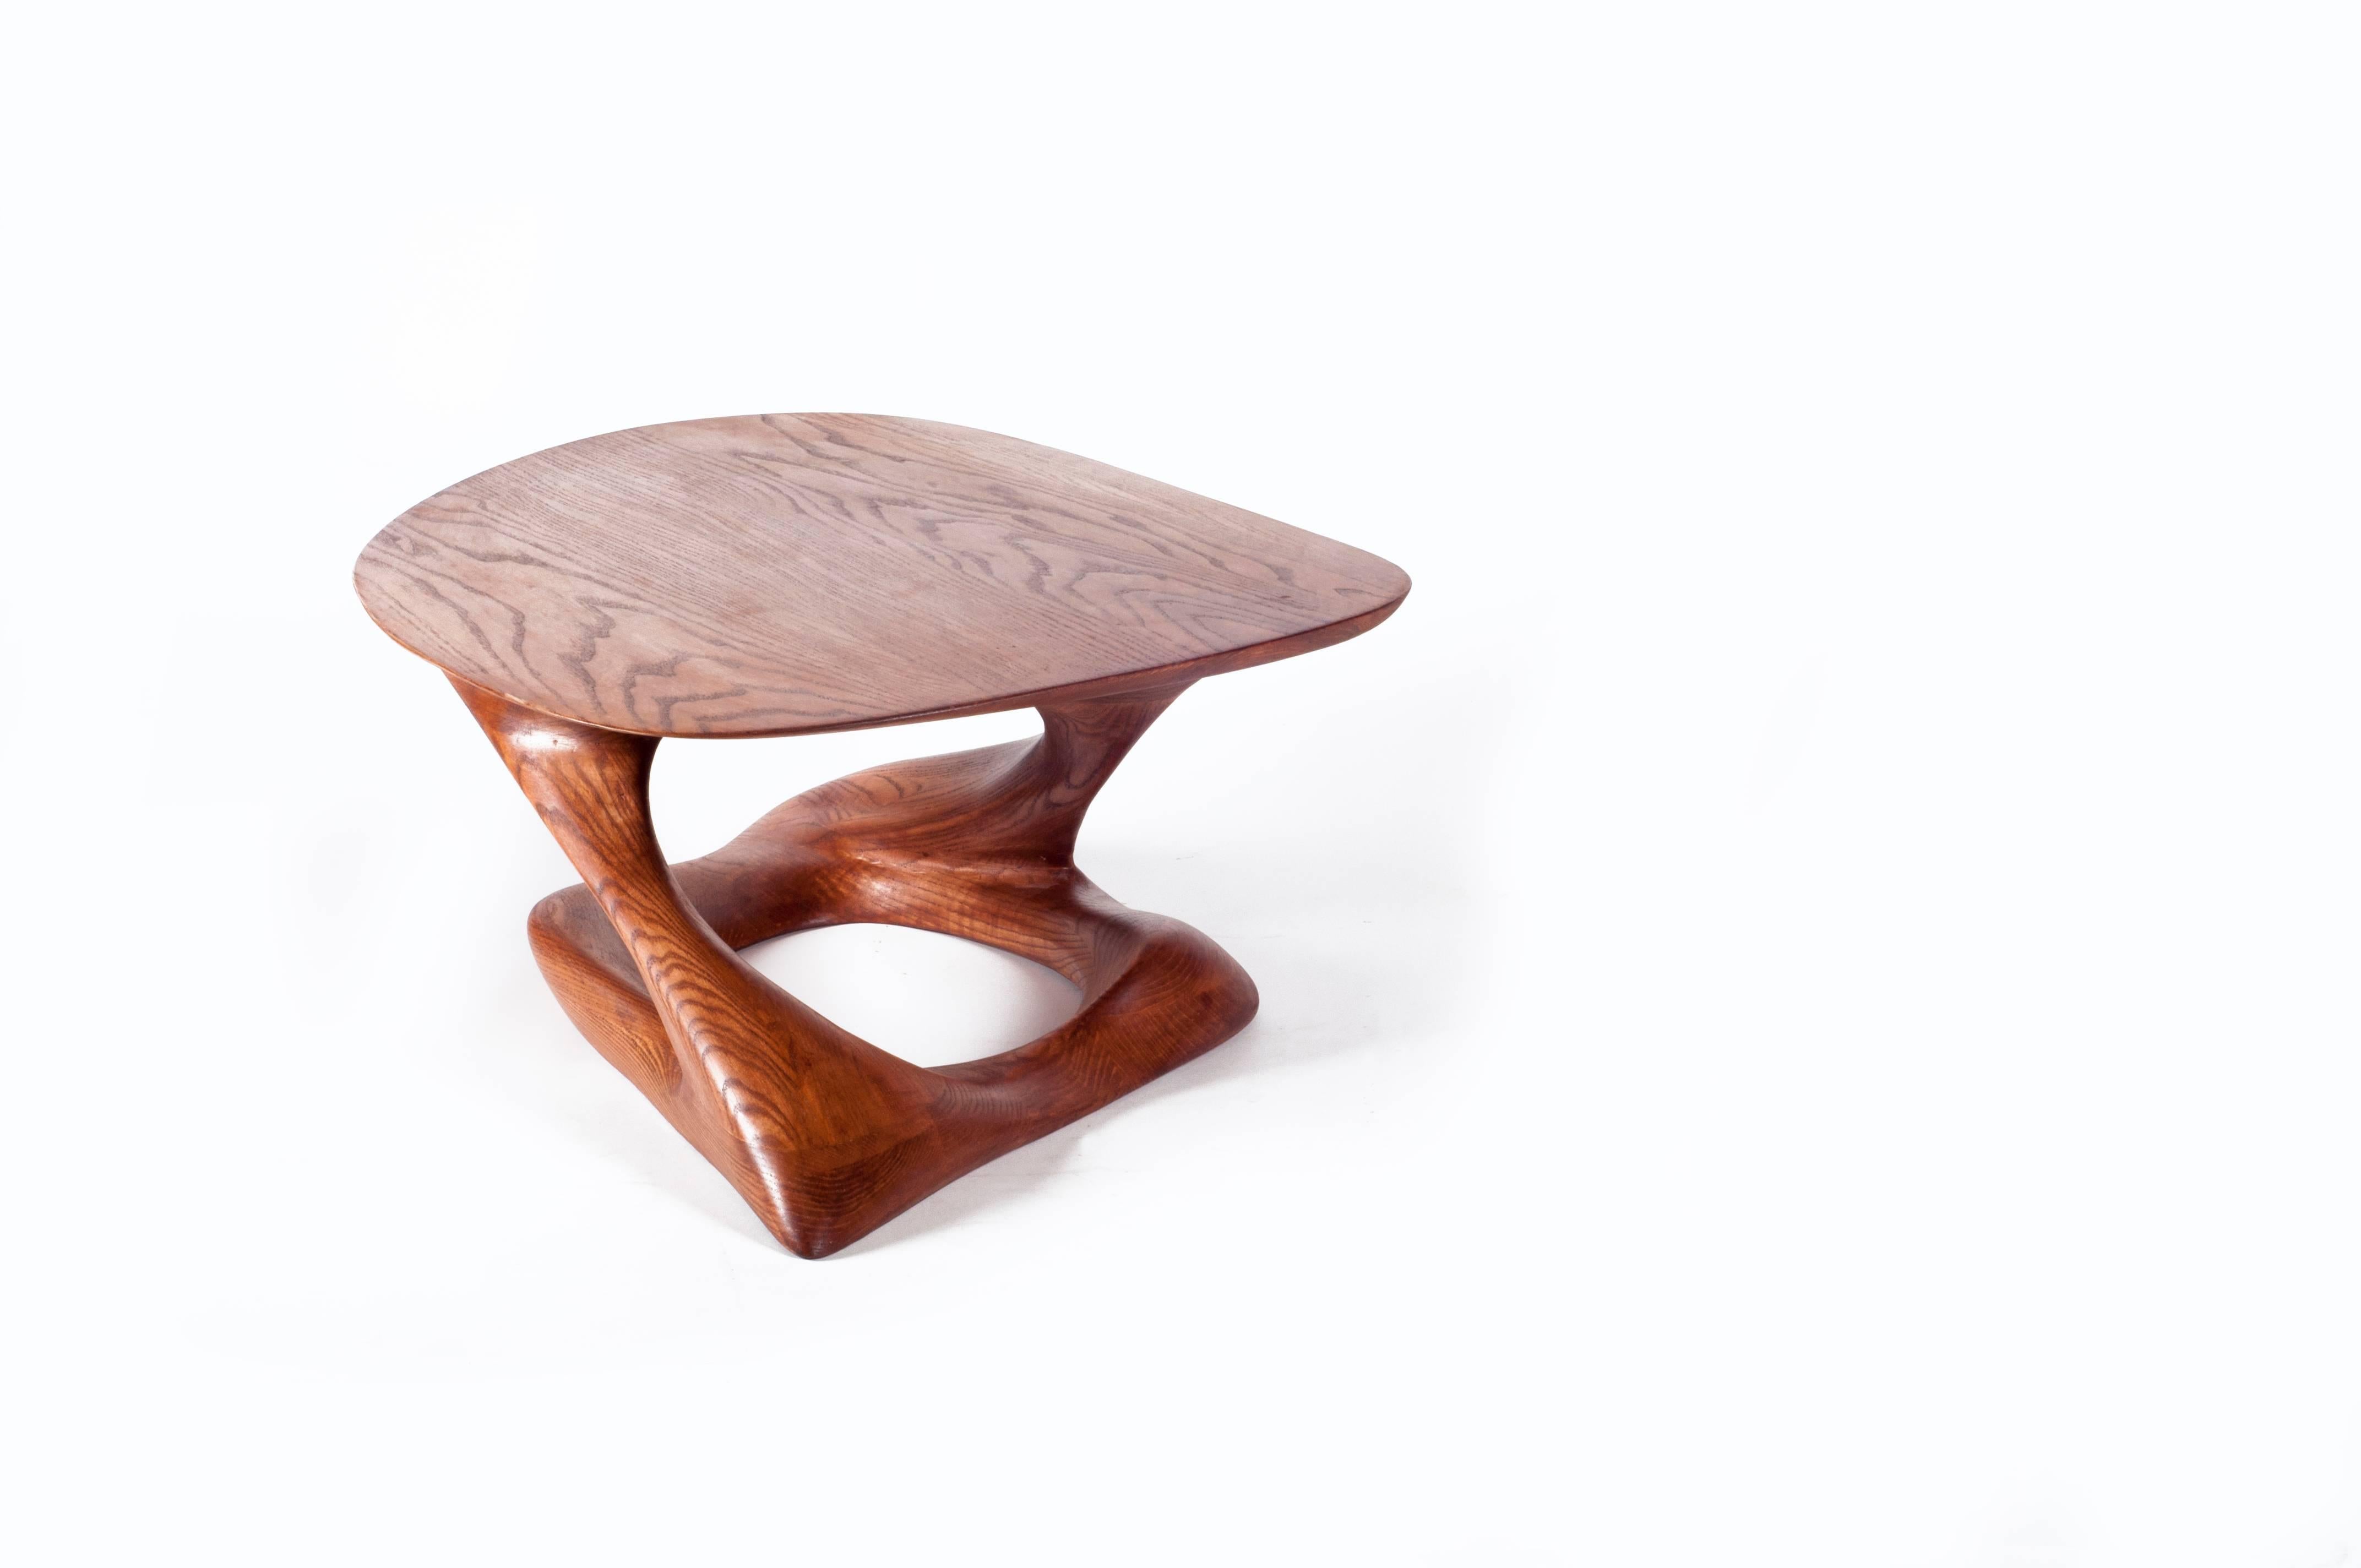 La table basse Plie est une table d'art sculpturale futuriste élégante avec une forme dynamique conçue et fabriquée par Amorph. Plie est fabriqué en frêne massif et teinté en noyer foncé. Par nature, l'aspect du grain de bois de frêne sera